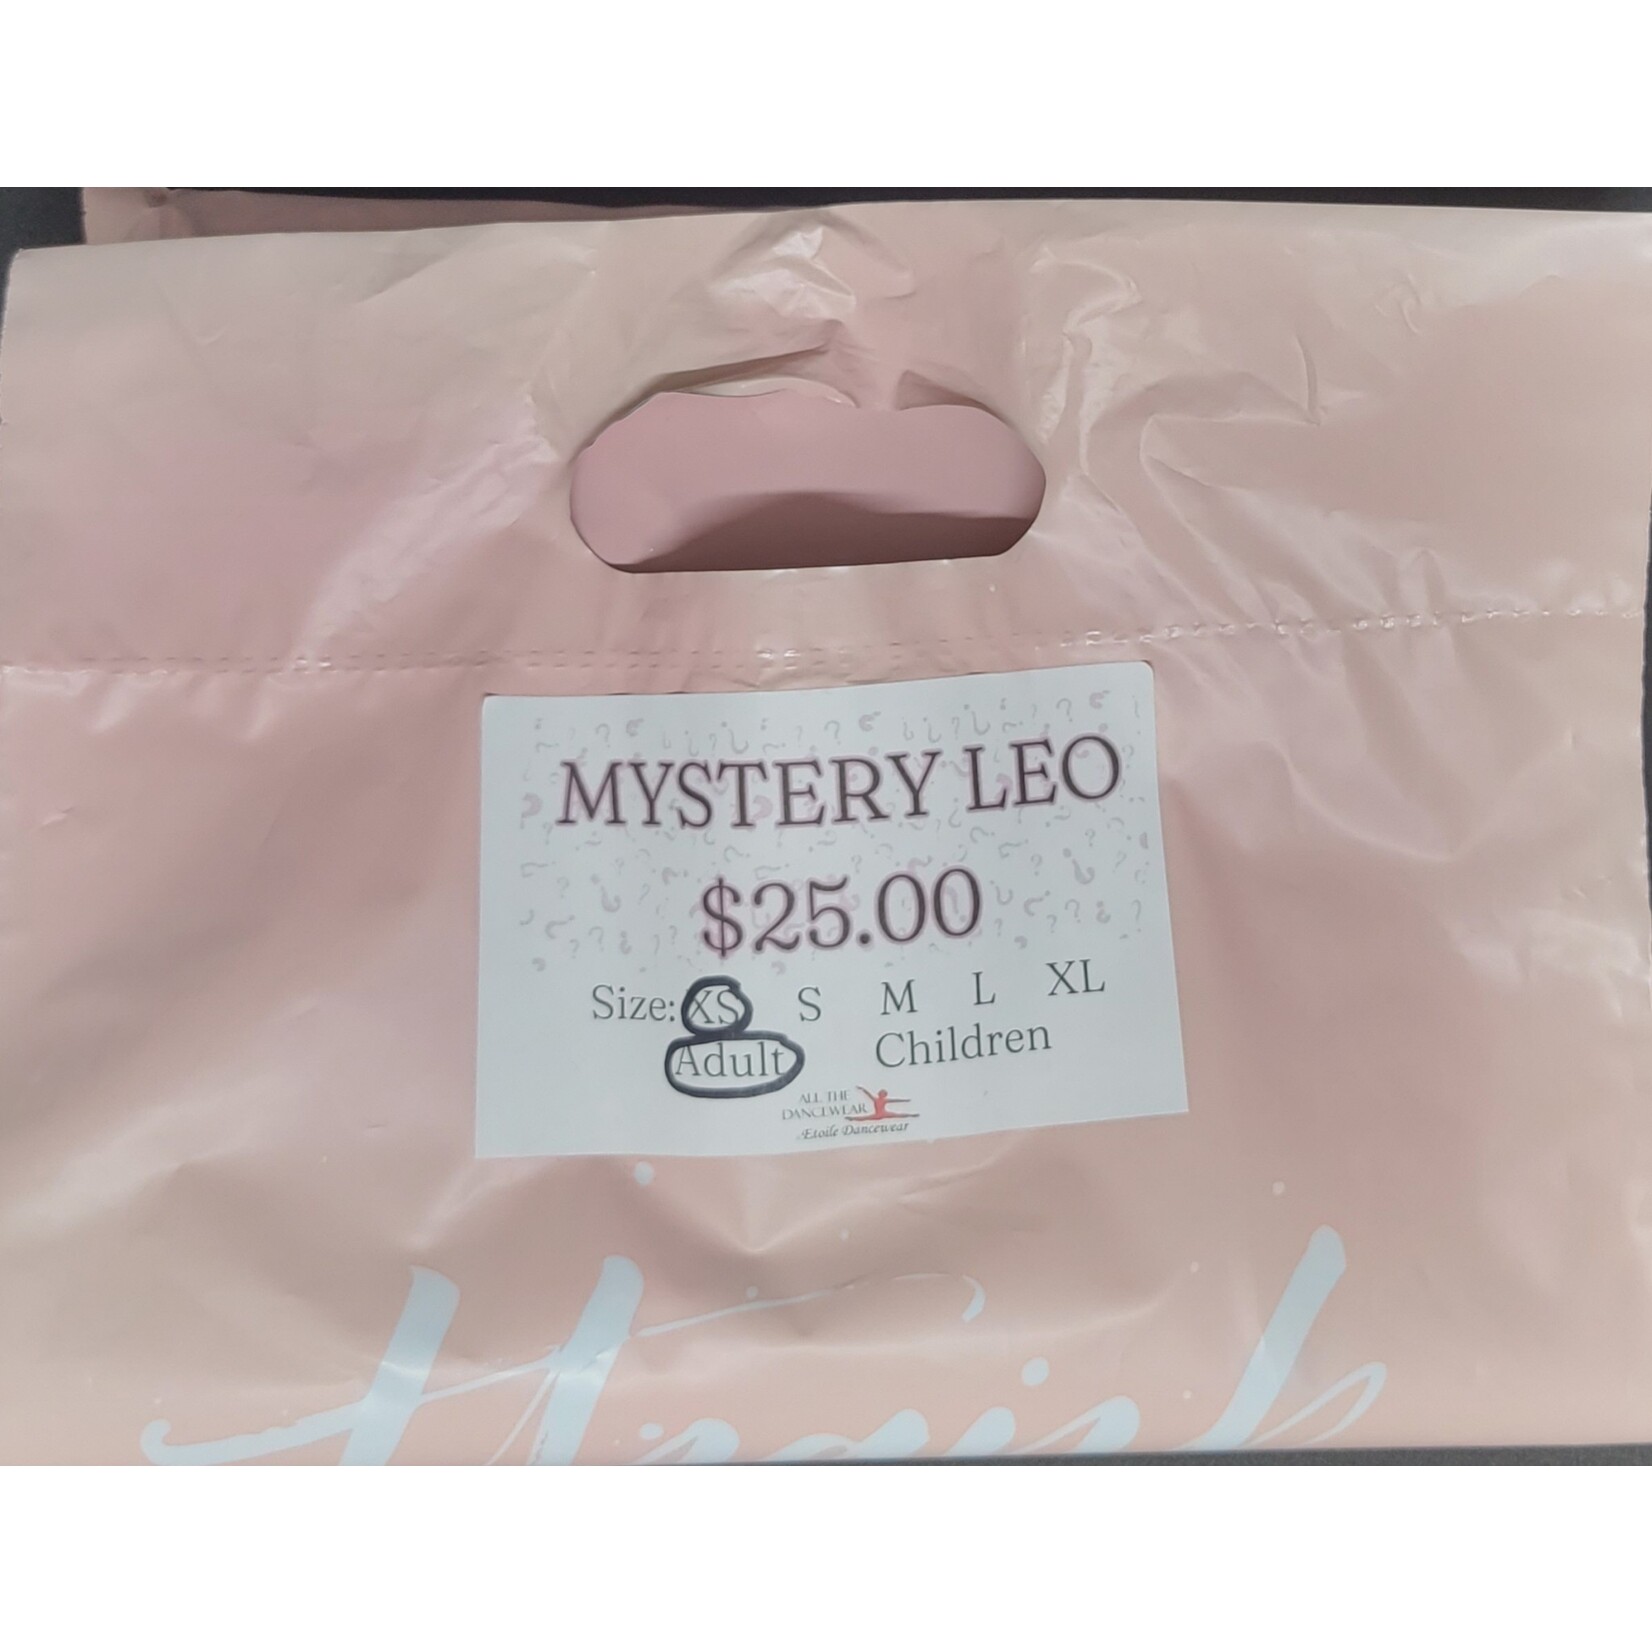 Mystery Leo